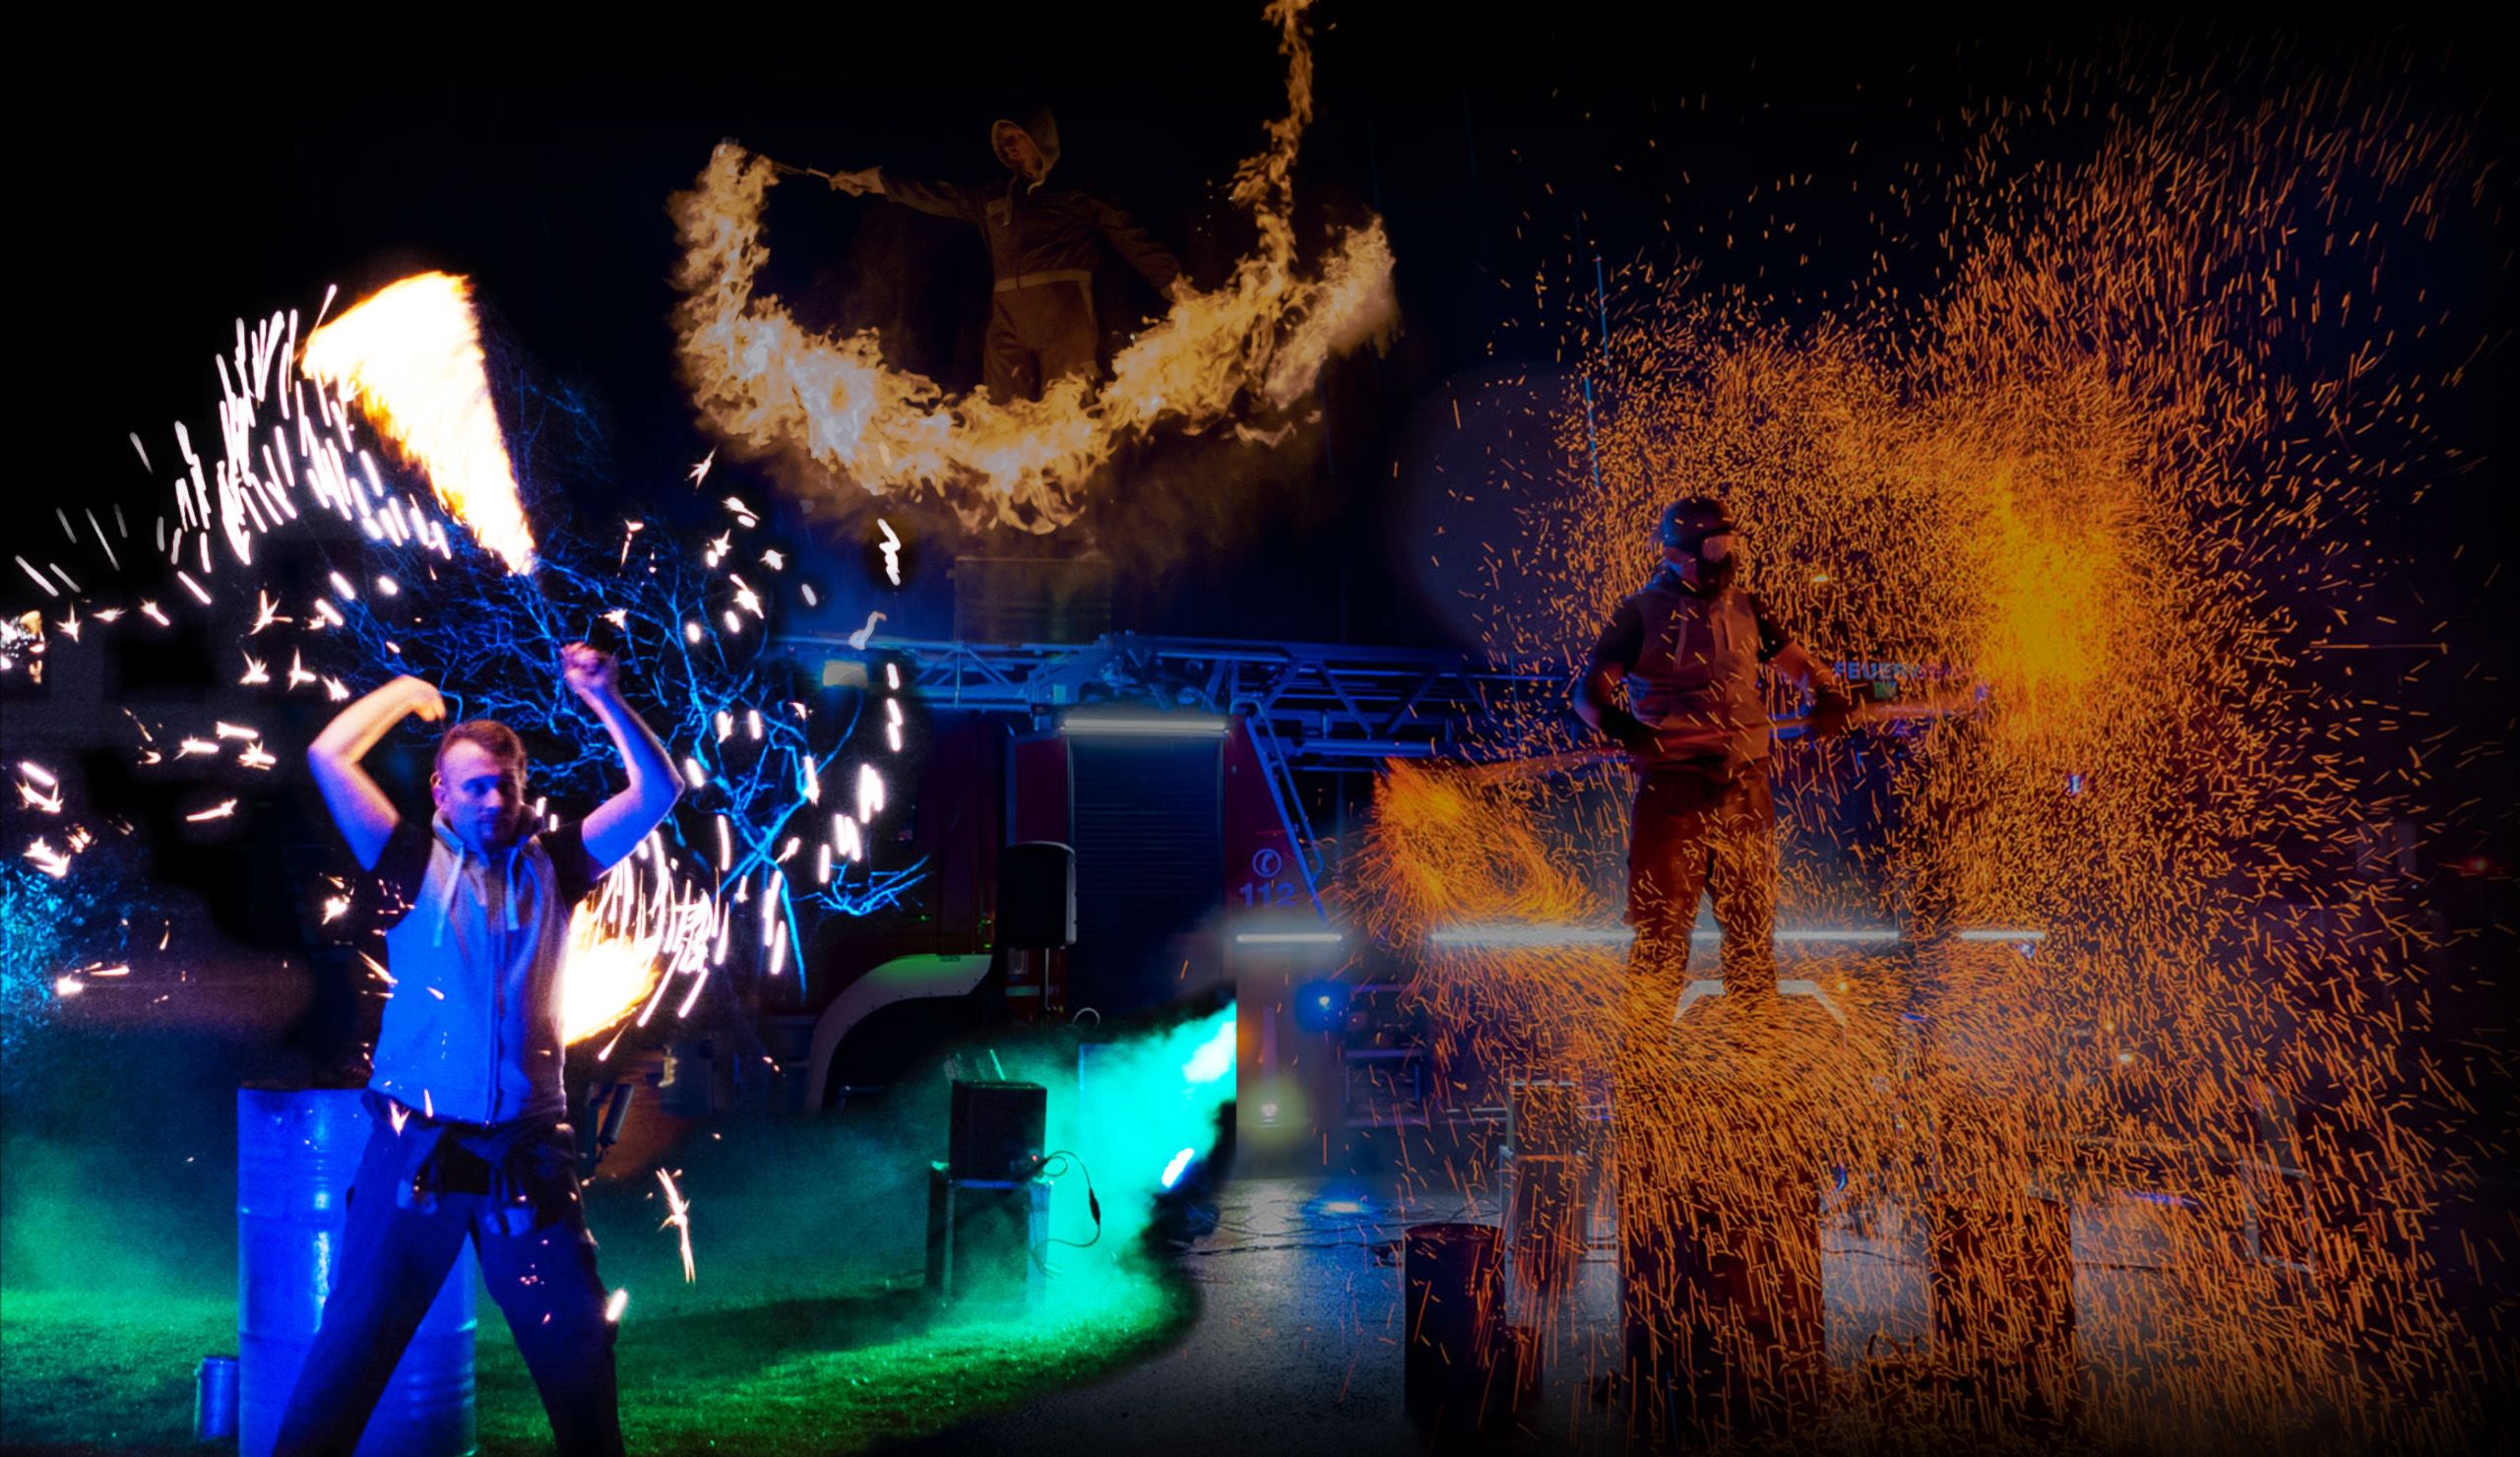 Feuershow Collage mit Funkeneffekten und brennenden Seilen